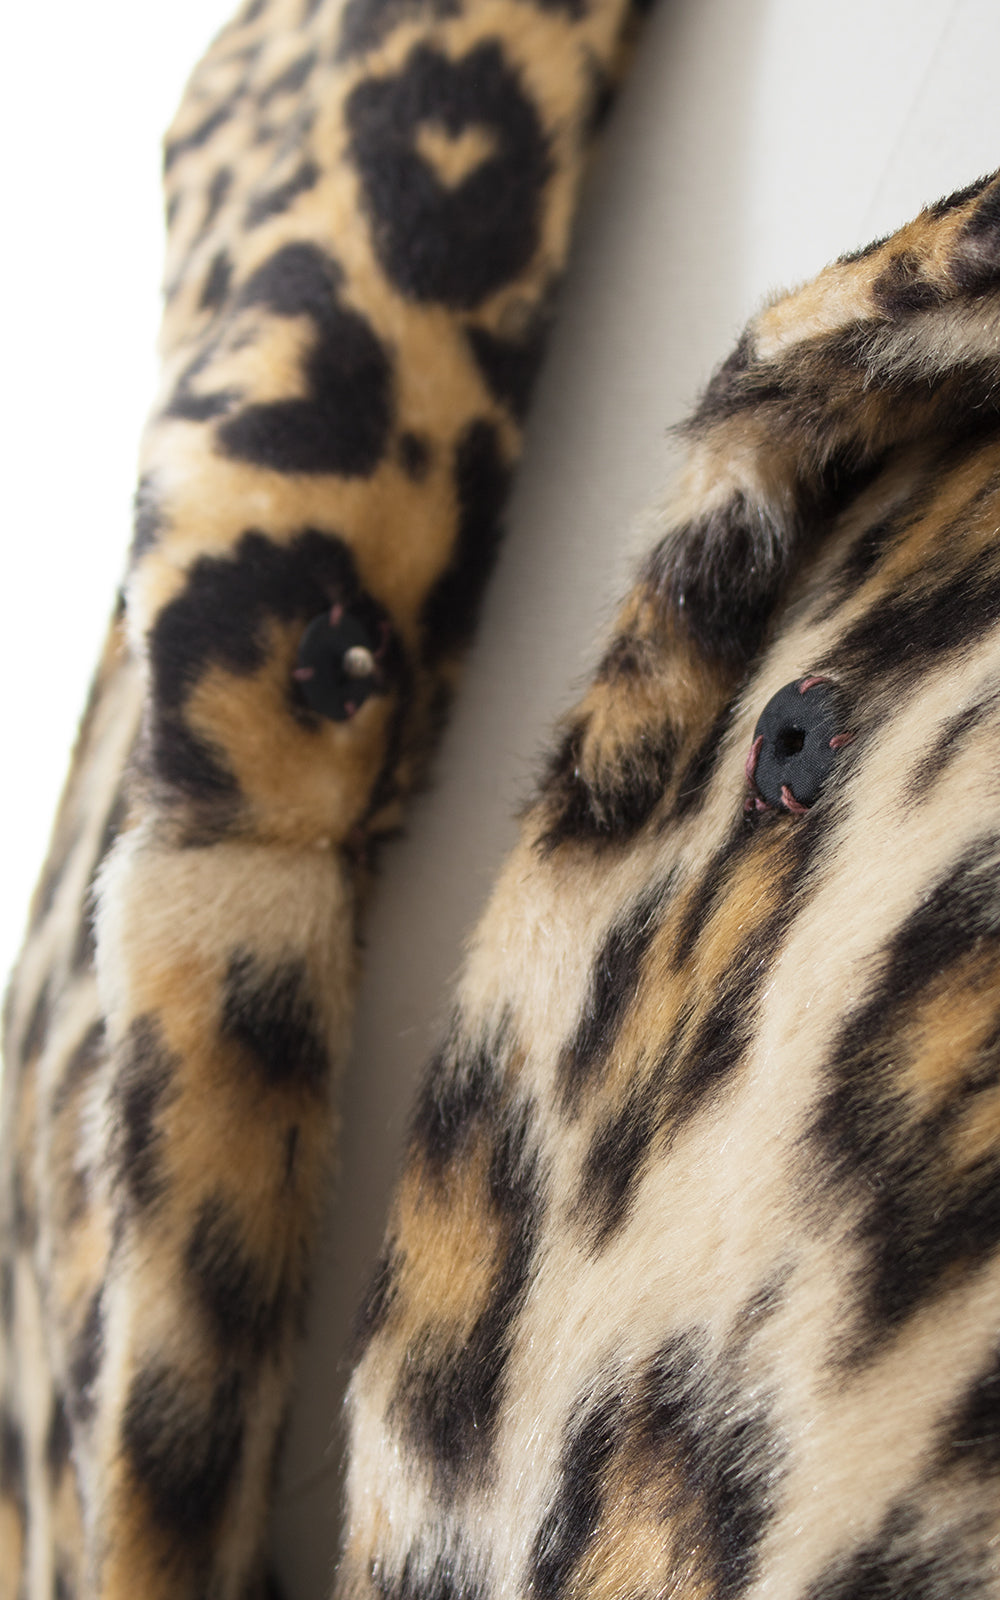 1950s Leopard Print Faux Fur Swing Coat